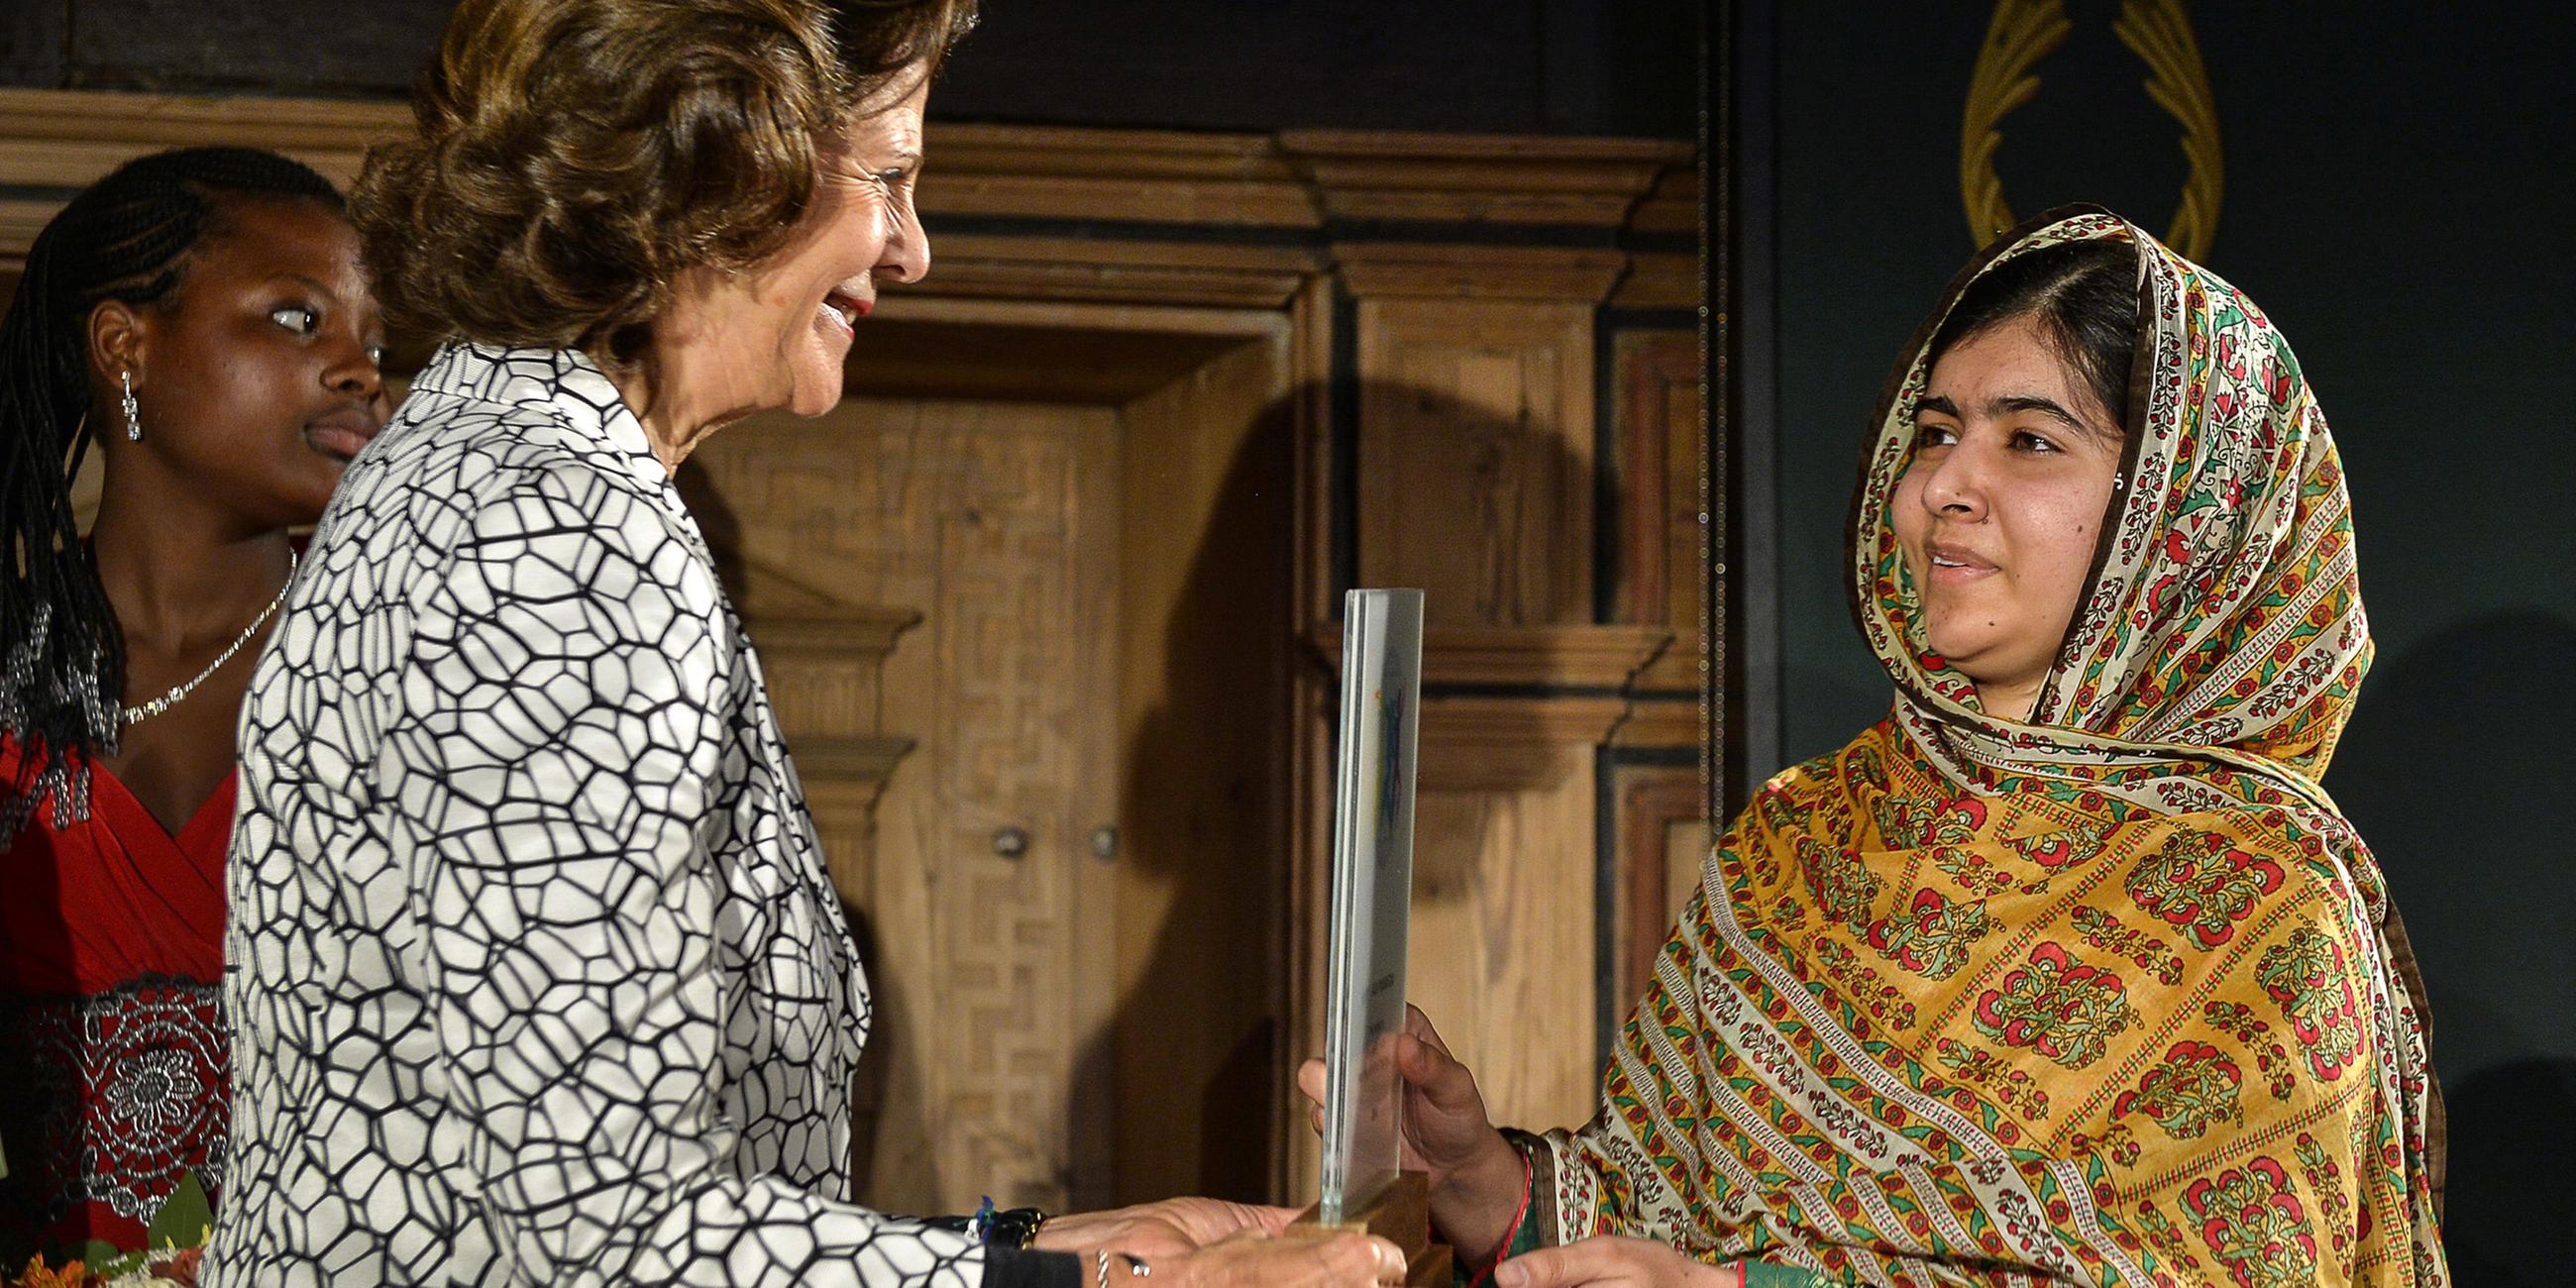 Archiv: Königin Silvia verleiht der Friedensnobelpreisträgerin Malala Yousafzai den "World’s children’s prize" am 29.10.2014